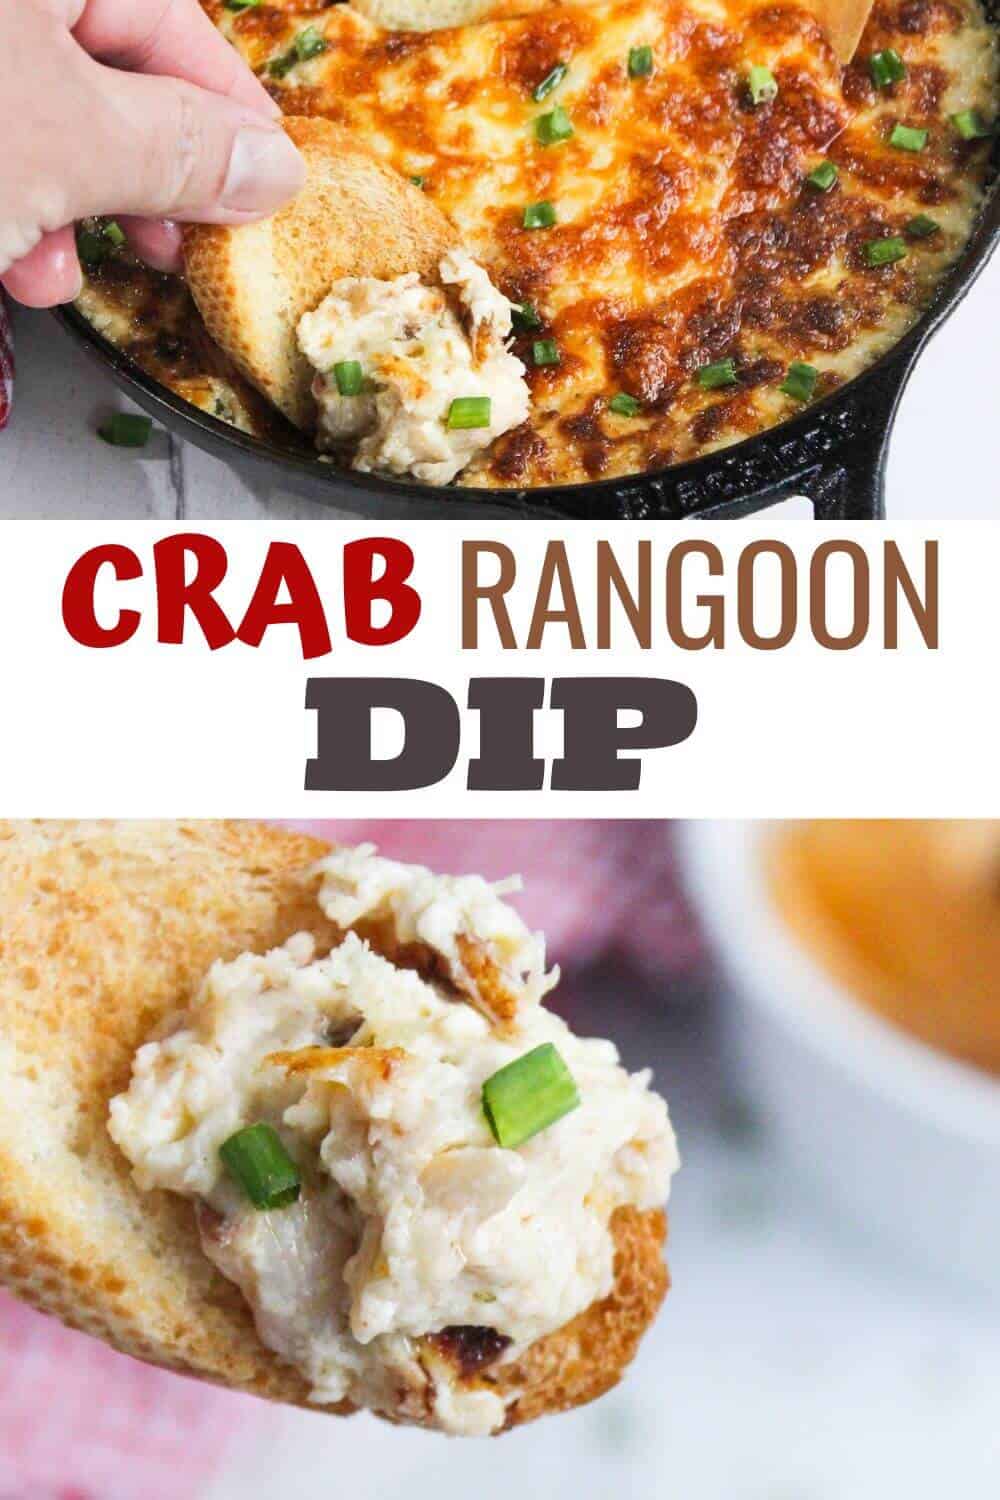 Crab rangoon dip in a skillet.